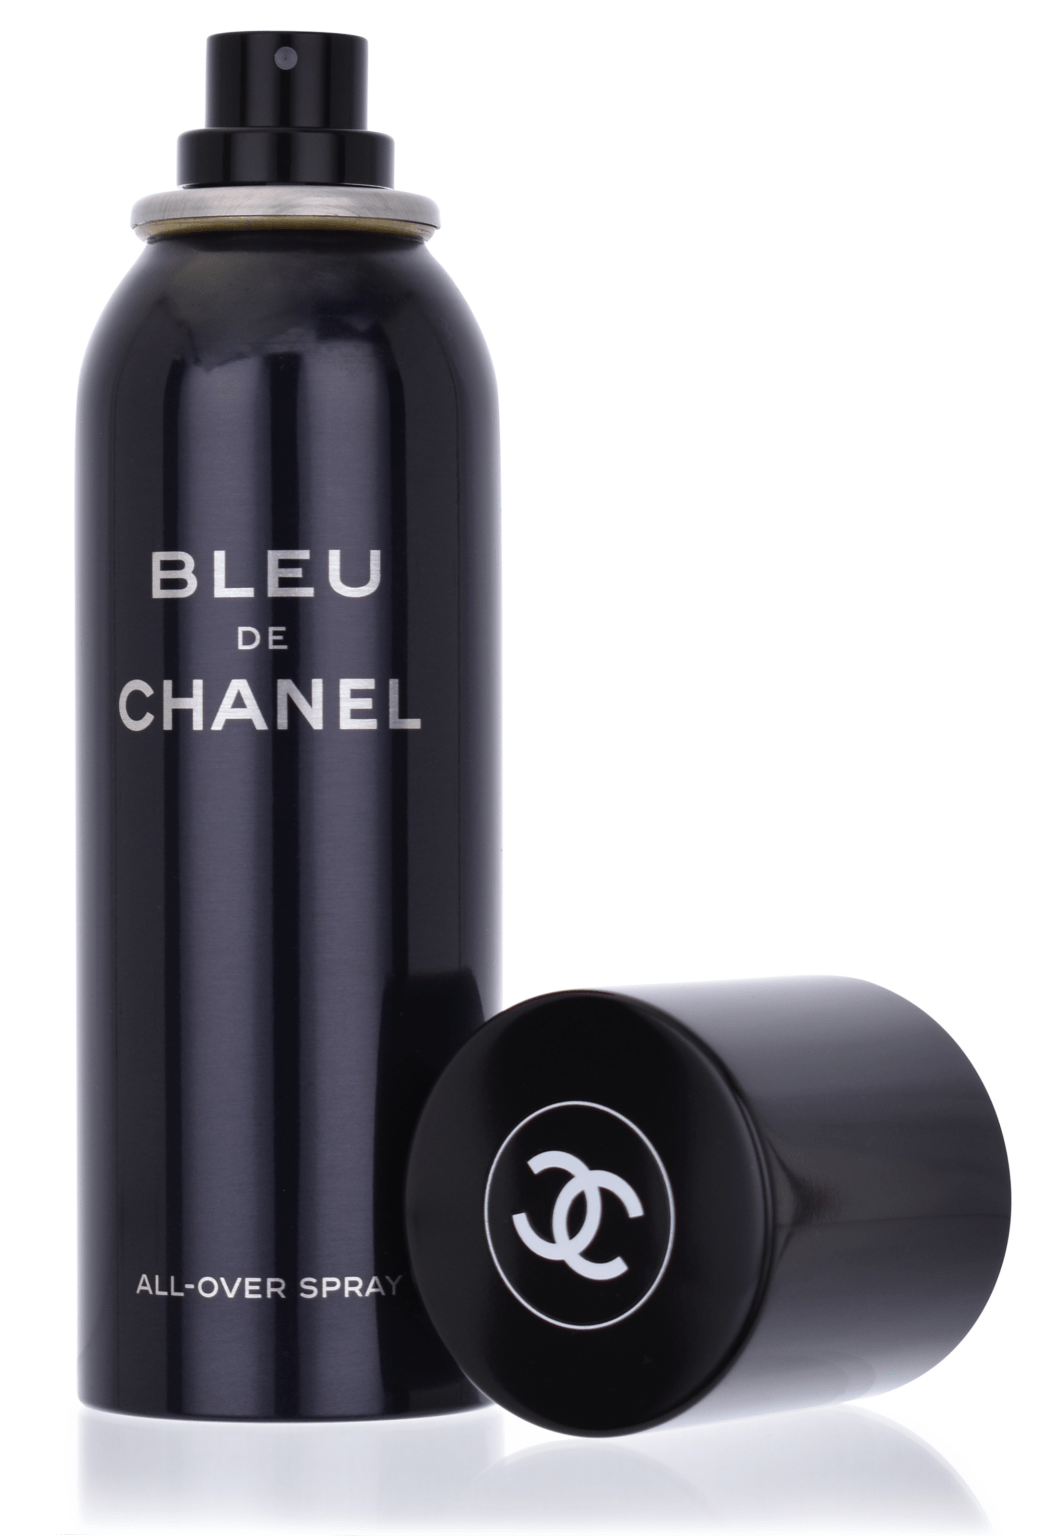 Chanel Bleu de Chanel 150 ml All-Over Spray